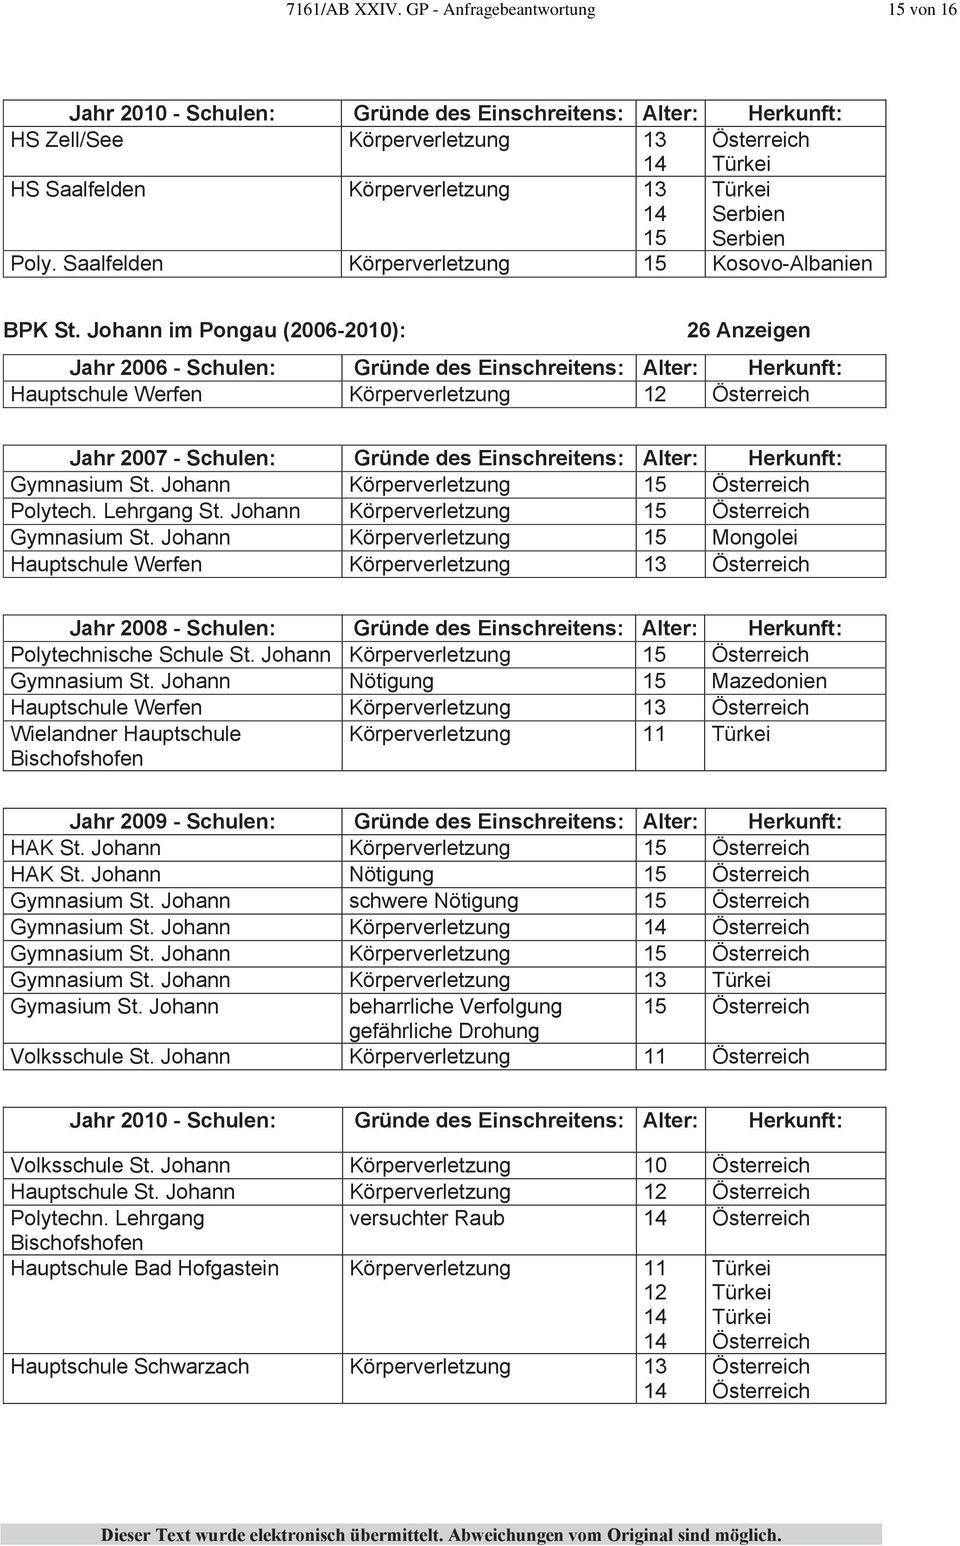 Johann Mongolei Hauptschule Werfen 13 Jahr 2008 - Alter: Herkunft: Polytechnische Schule St. Johann Gymnasium St.